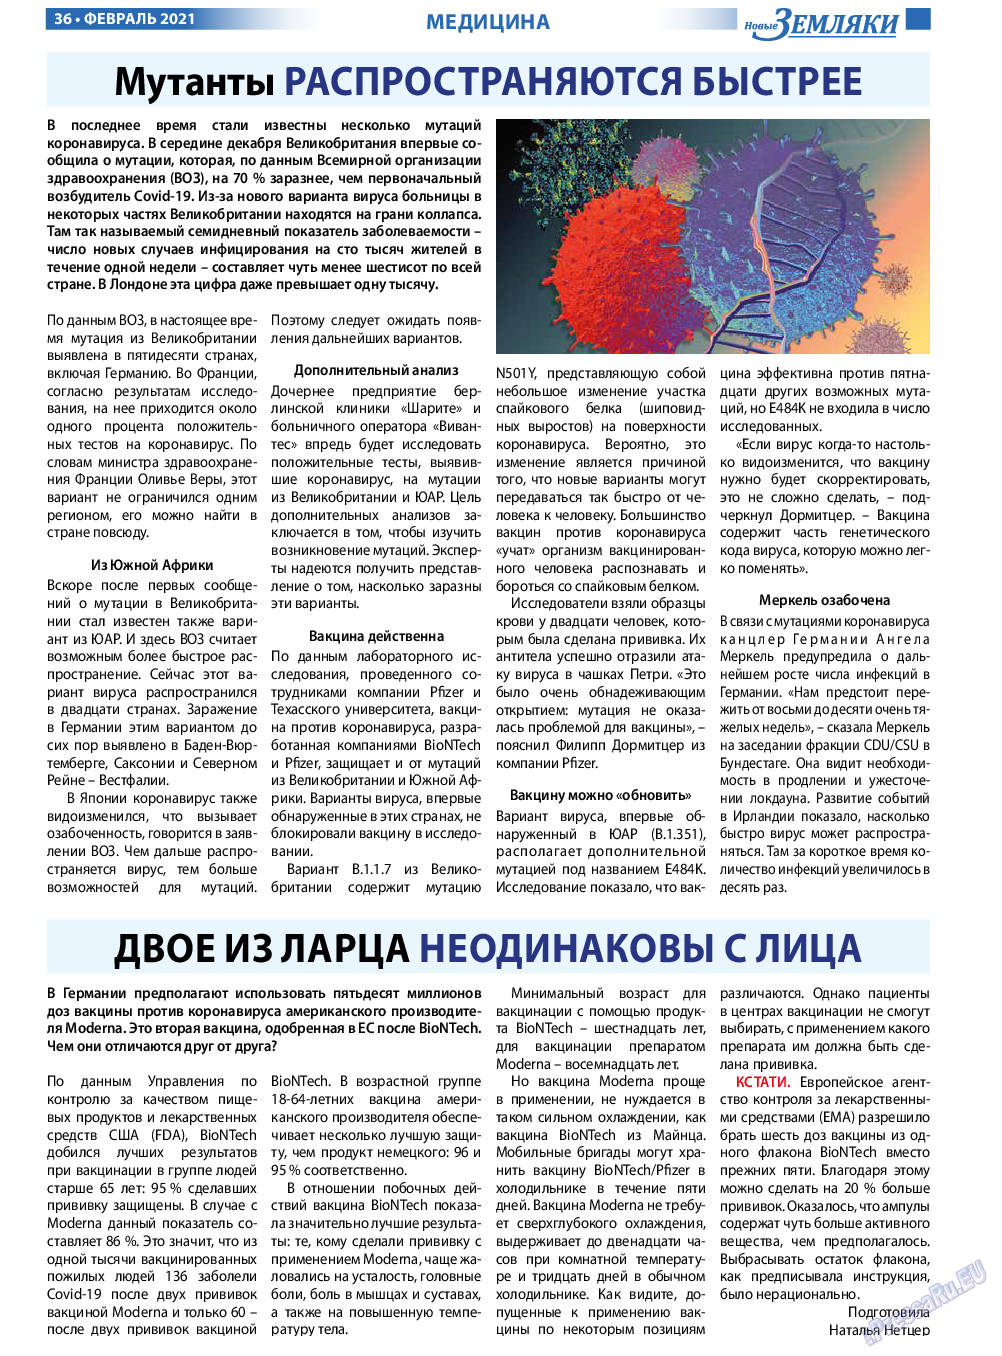 Новые Земляки, газета. 2021 №2 стр.36